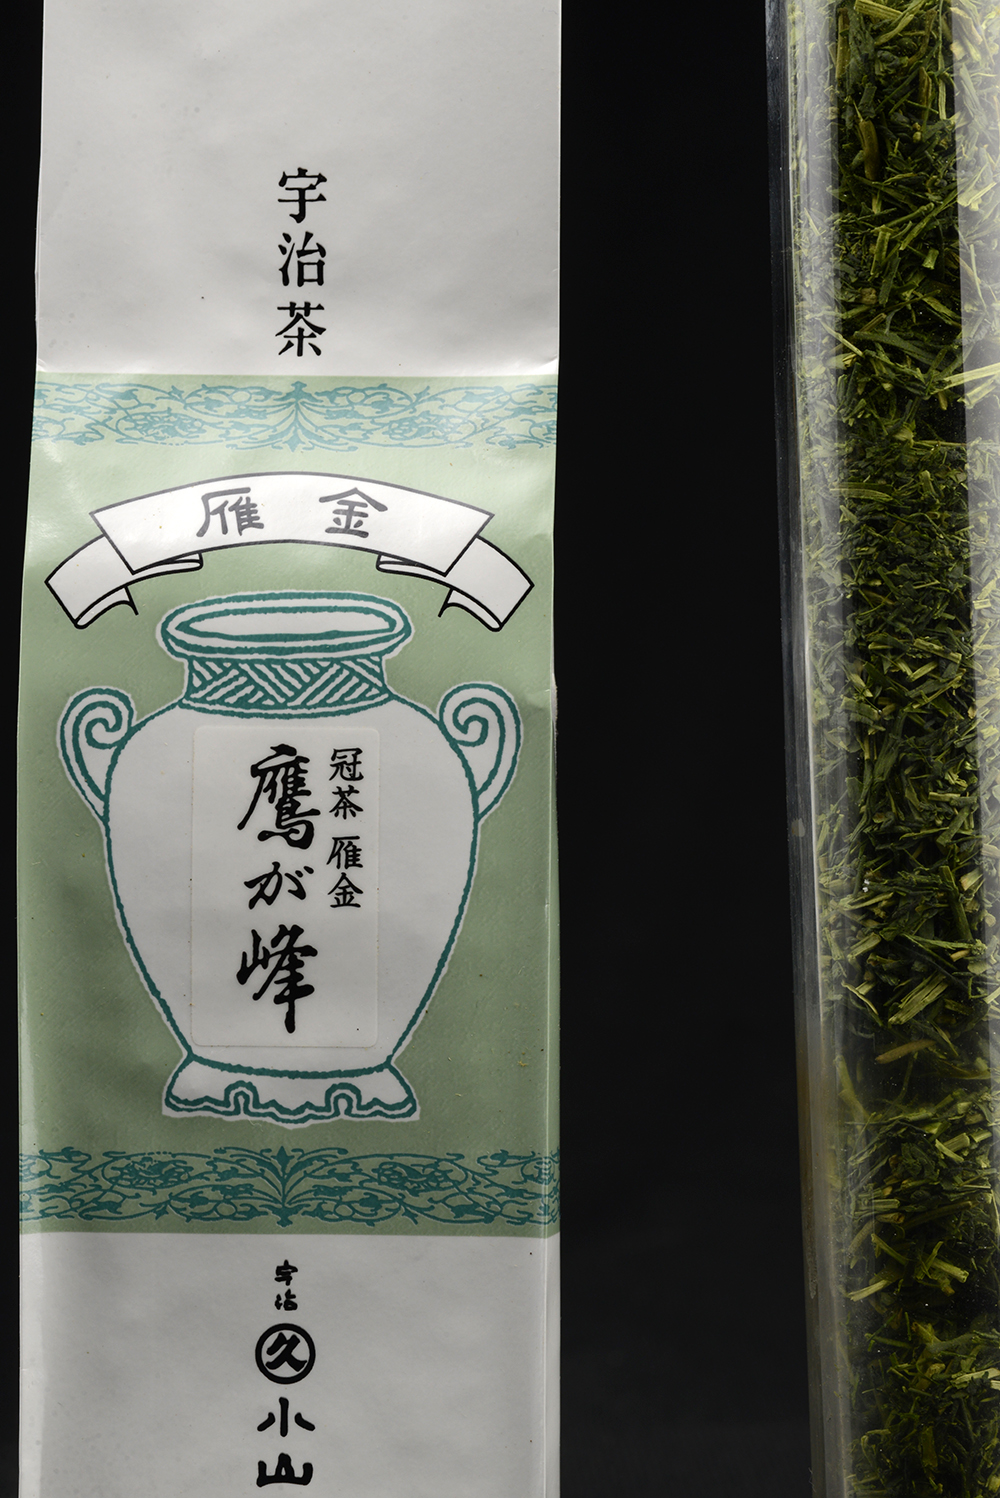 Marukyu-Koyamaen karigane Takagamine japanese green tea